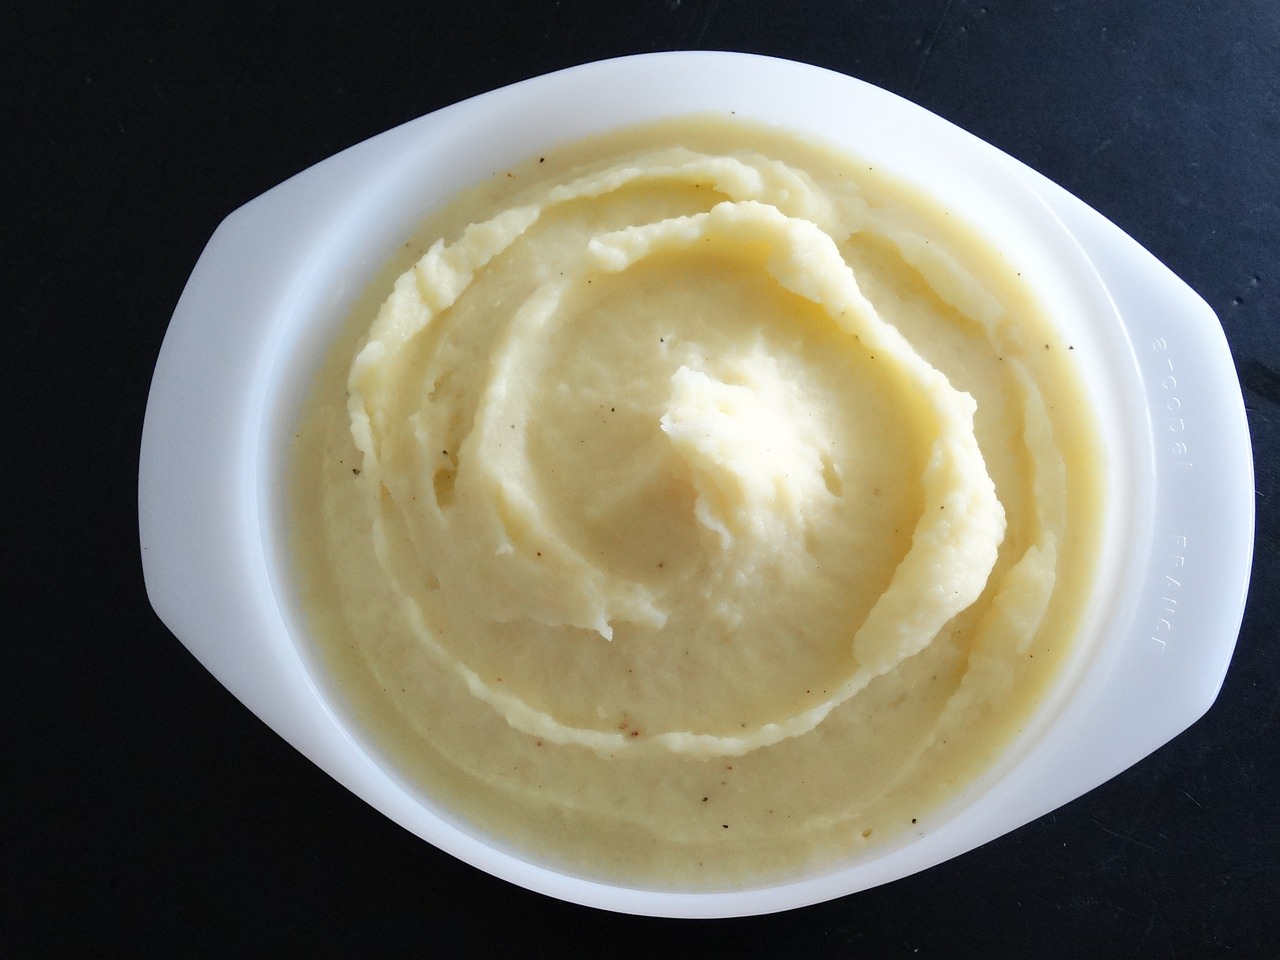 Resep Mashed Potato Sederhana, Gambar oleh Hebi B. dari Pixabay